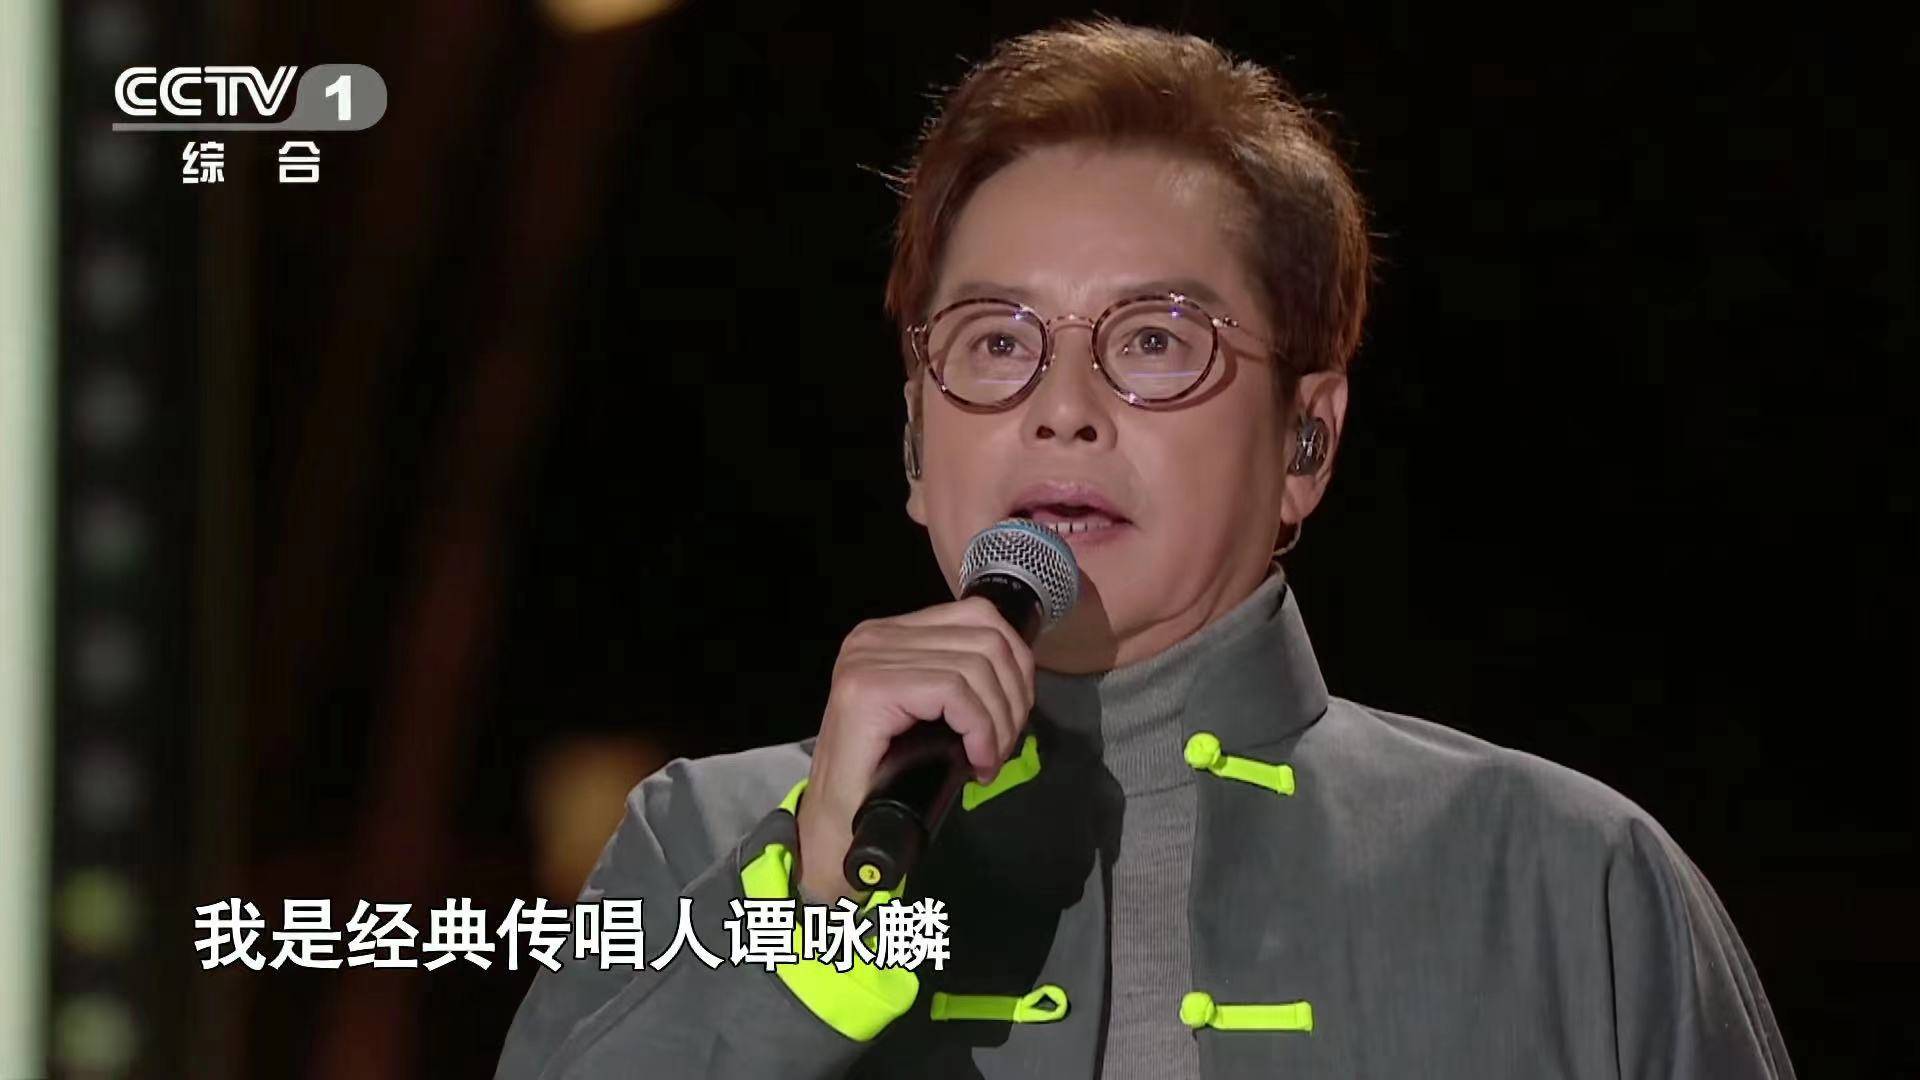 原创70岁香港男歌手改编《定风波》,撒贝宁:请解释一下苏轼骑摩托?